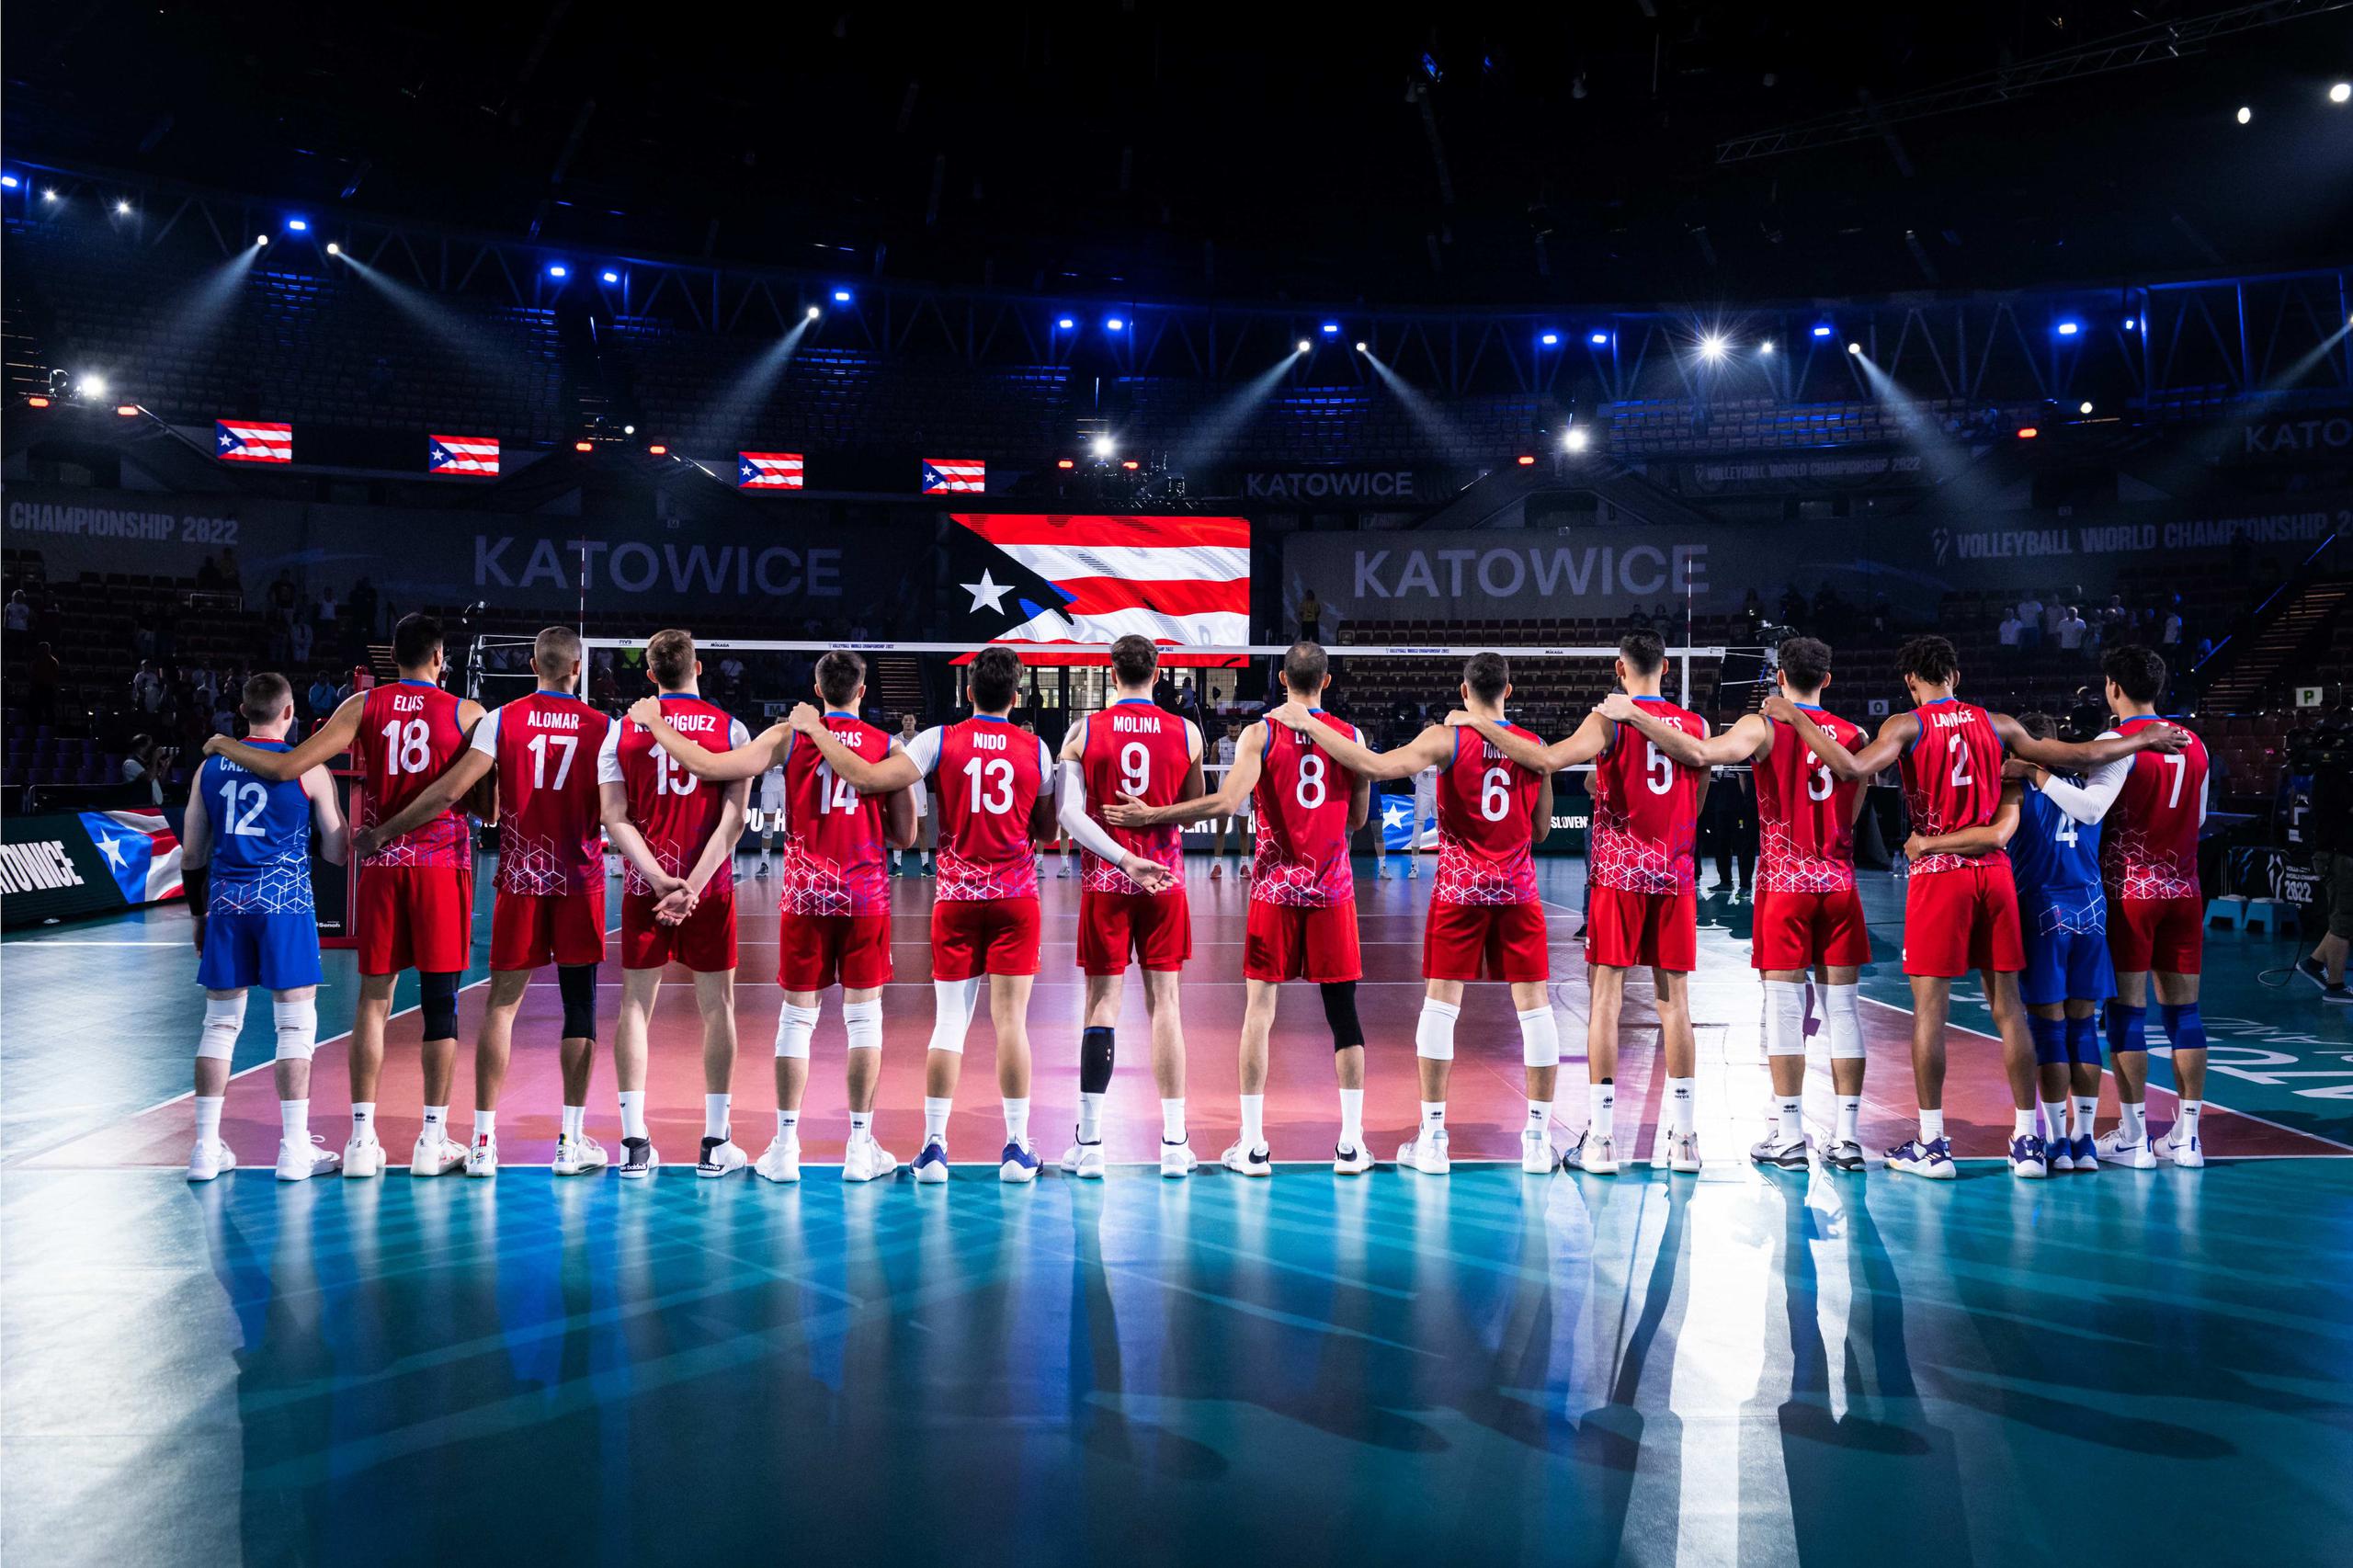 La Selección va este miércoles a su tercer juego en el Campeonato Mundial con sede en Katowice, Polonia.